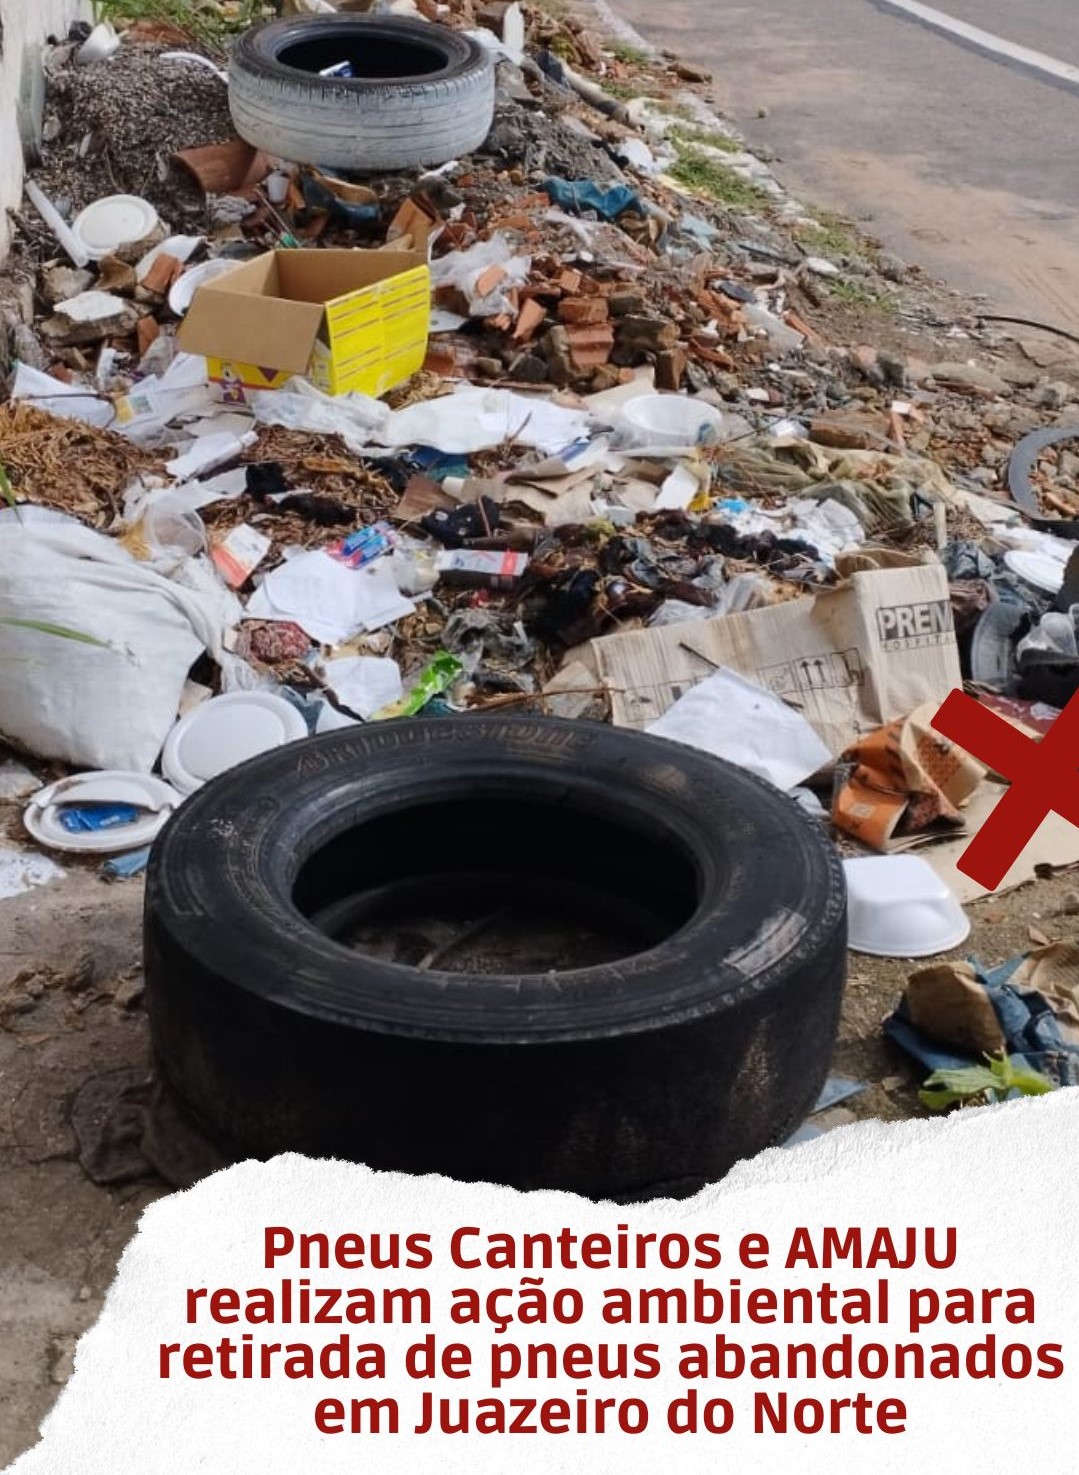 Loja Pneus Canteiros realiza ação ambiental com AMAJU para retirada de pneus abandonados em Juazeiro do Norte